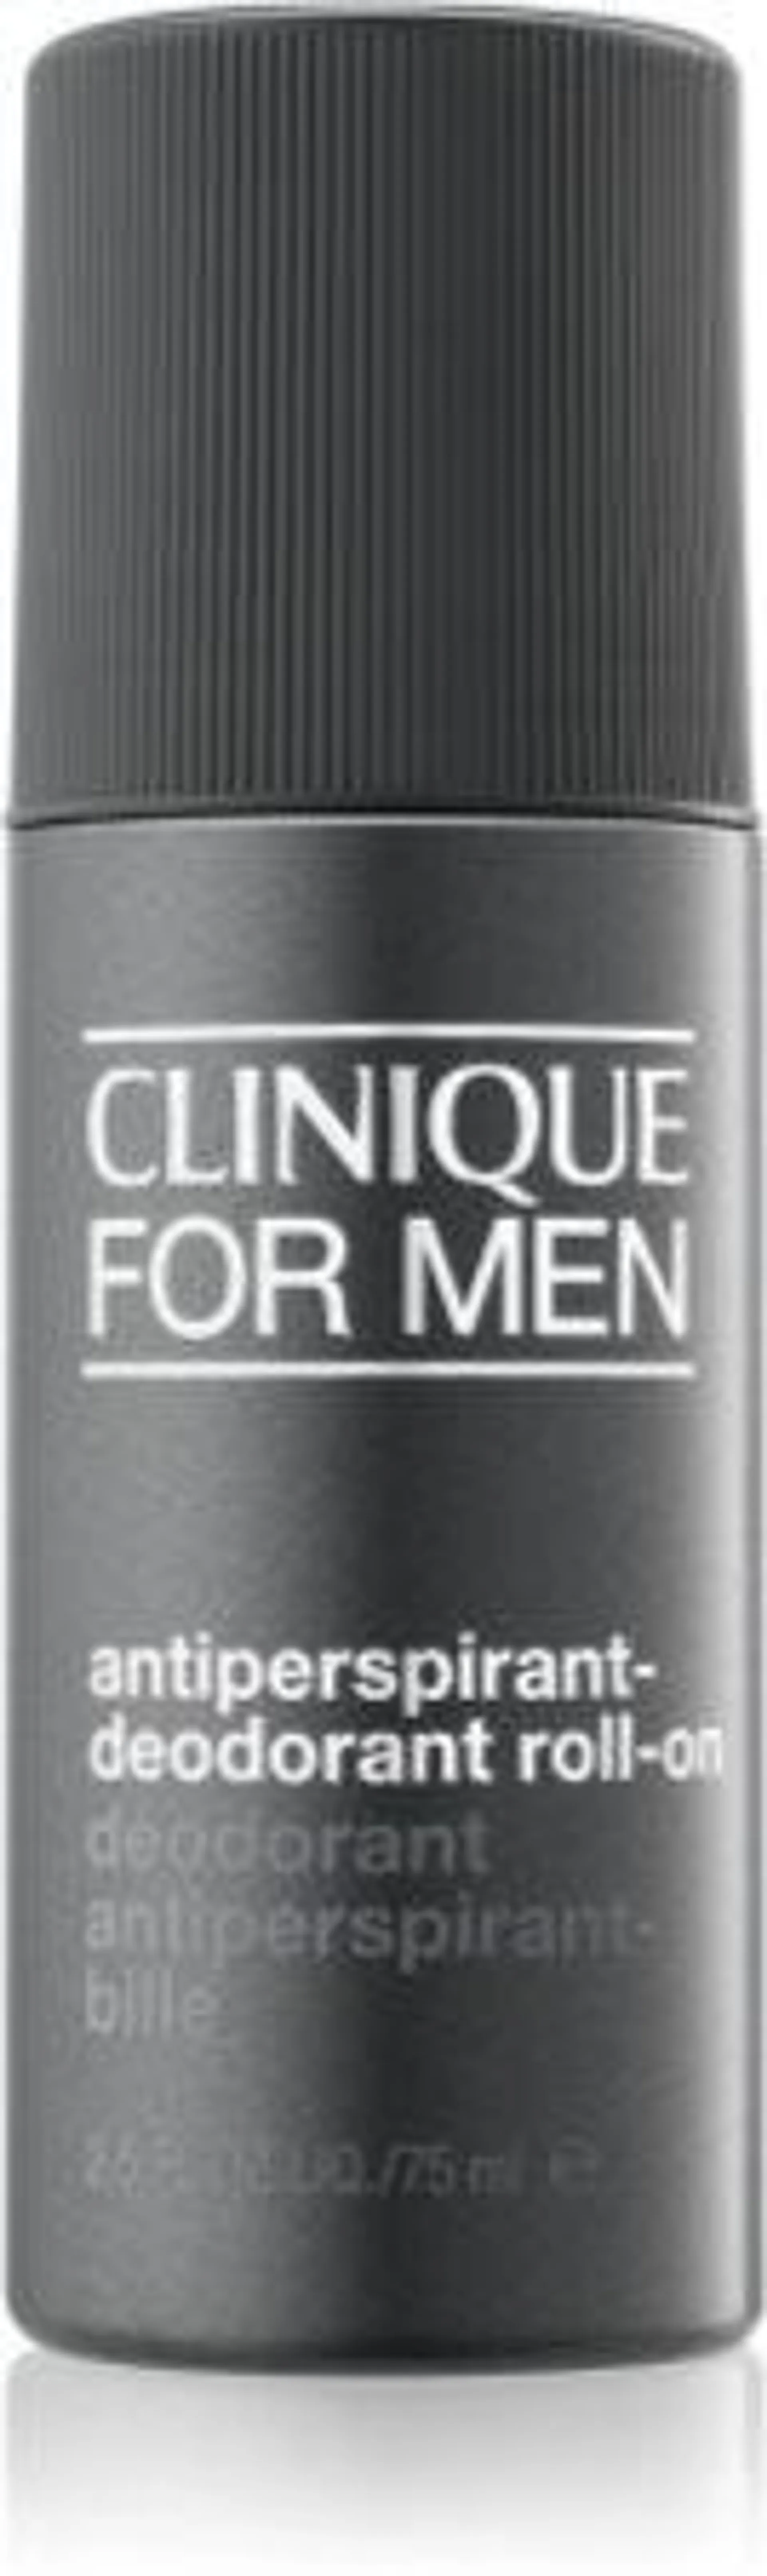 For Men™ Antiperspirant Deodorant Roll-On